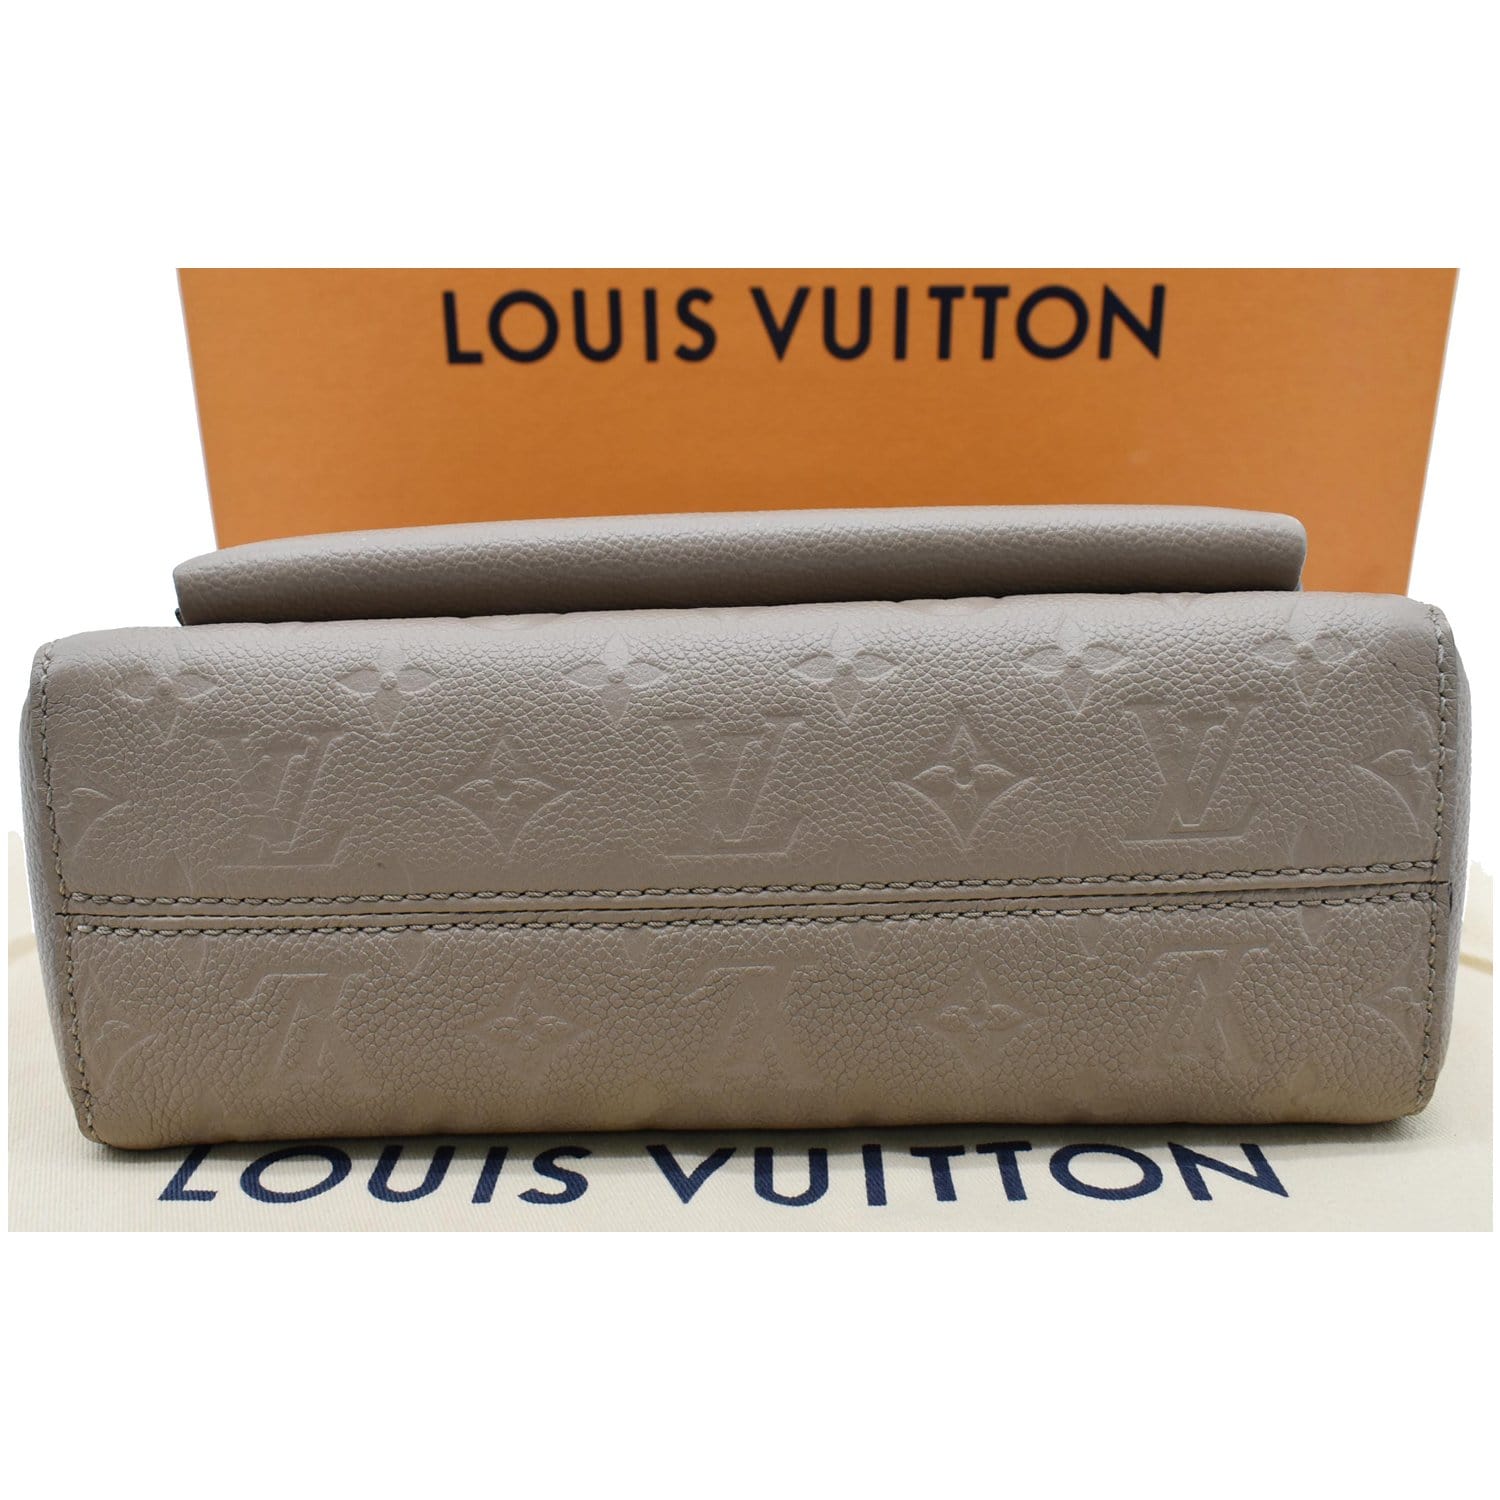 Louis Vuitton - Vavin PM - Taupe Empreinte - GHW - Pre Loved